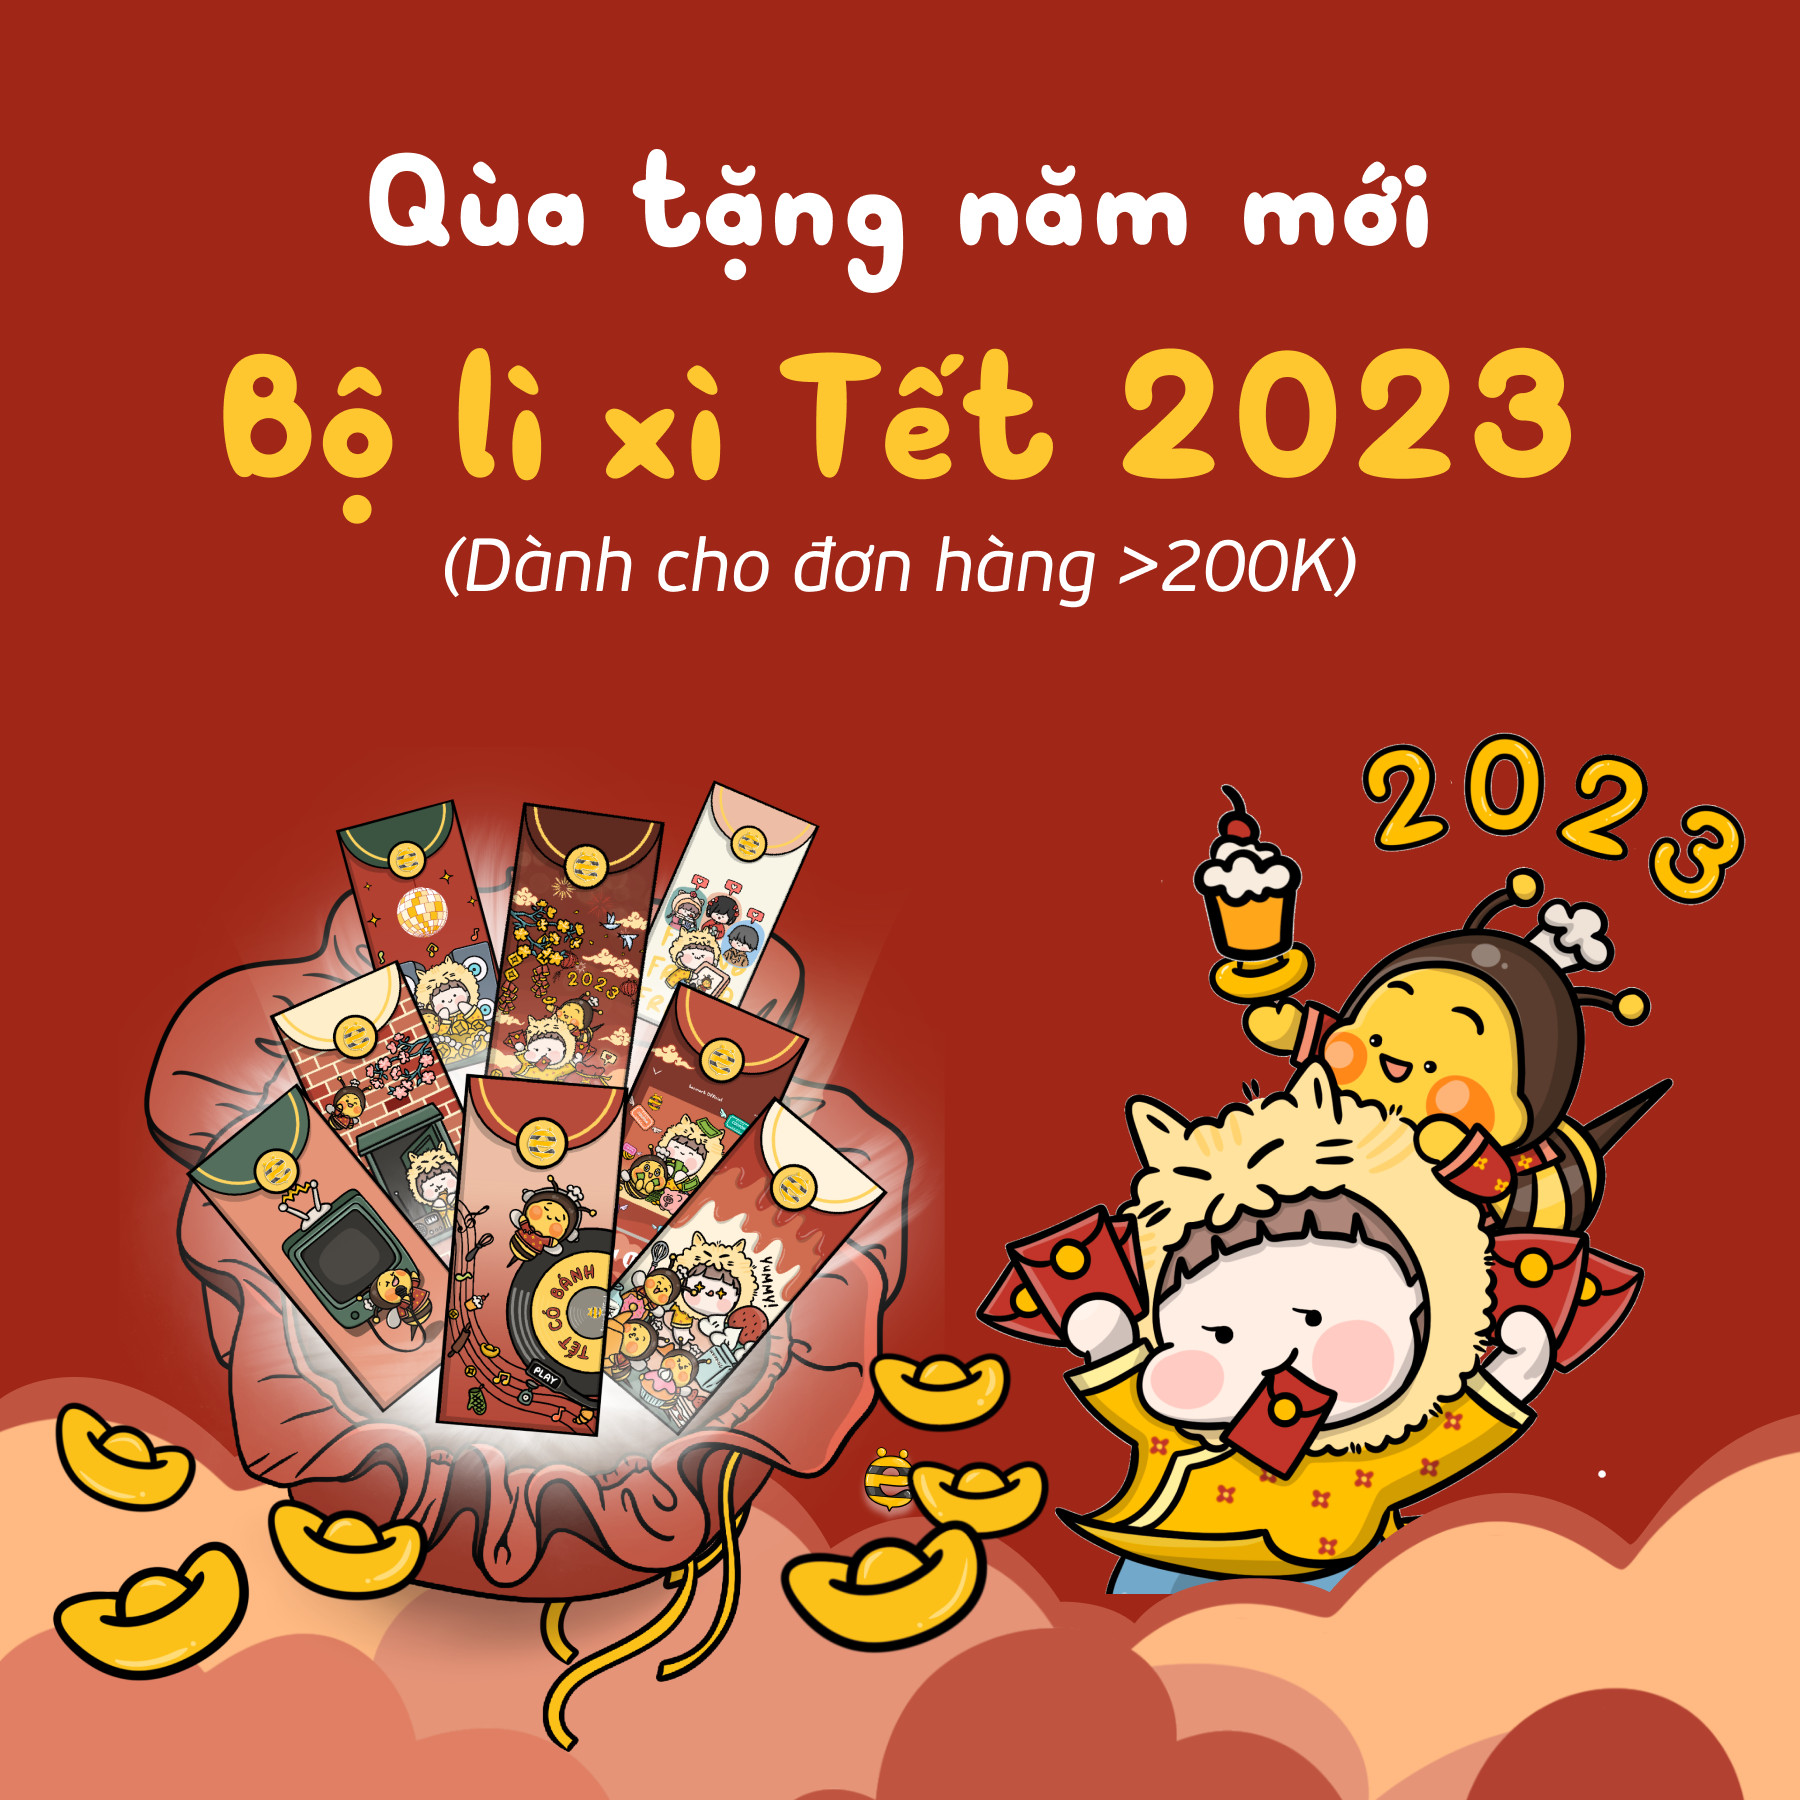 ĐẾN BEE SẮM TẾT NHẬN QUÀ FREE - BỘ LÌ XÌ TẾT 2023 CỰC 